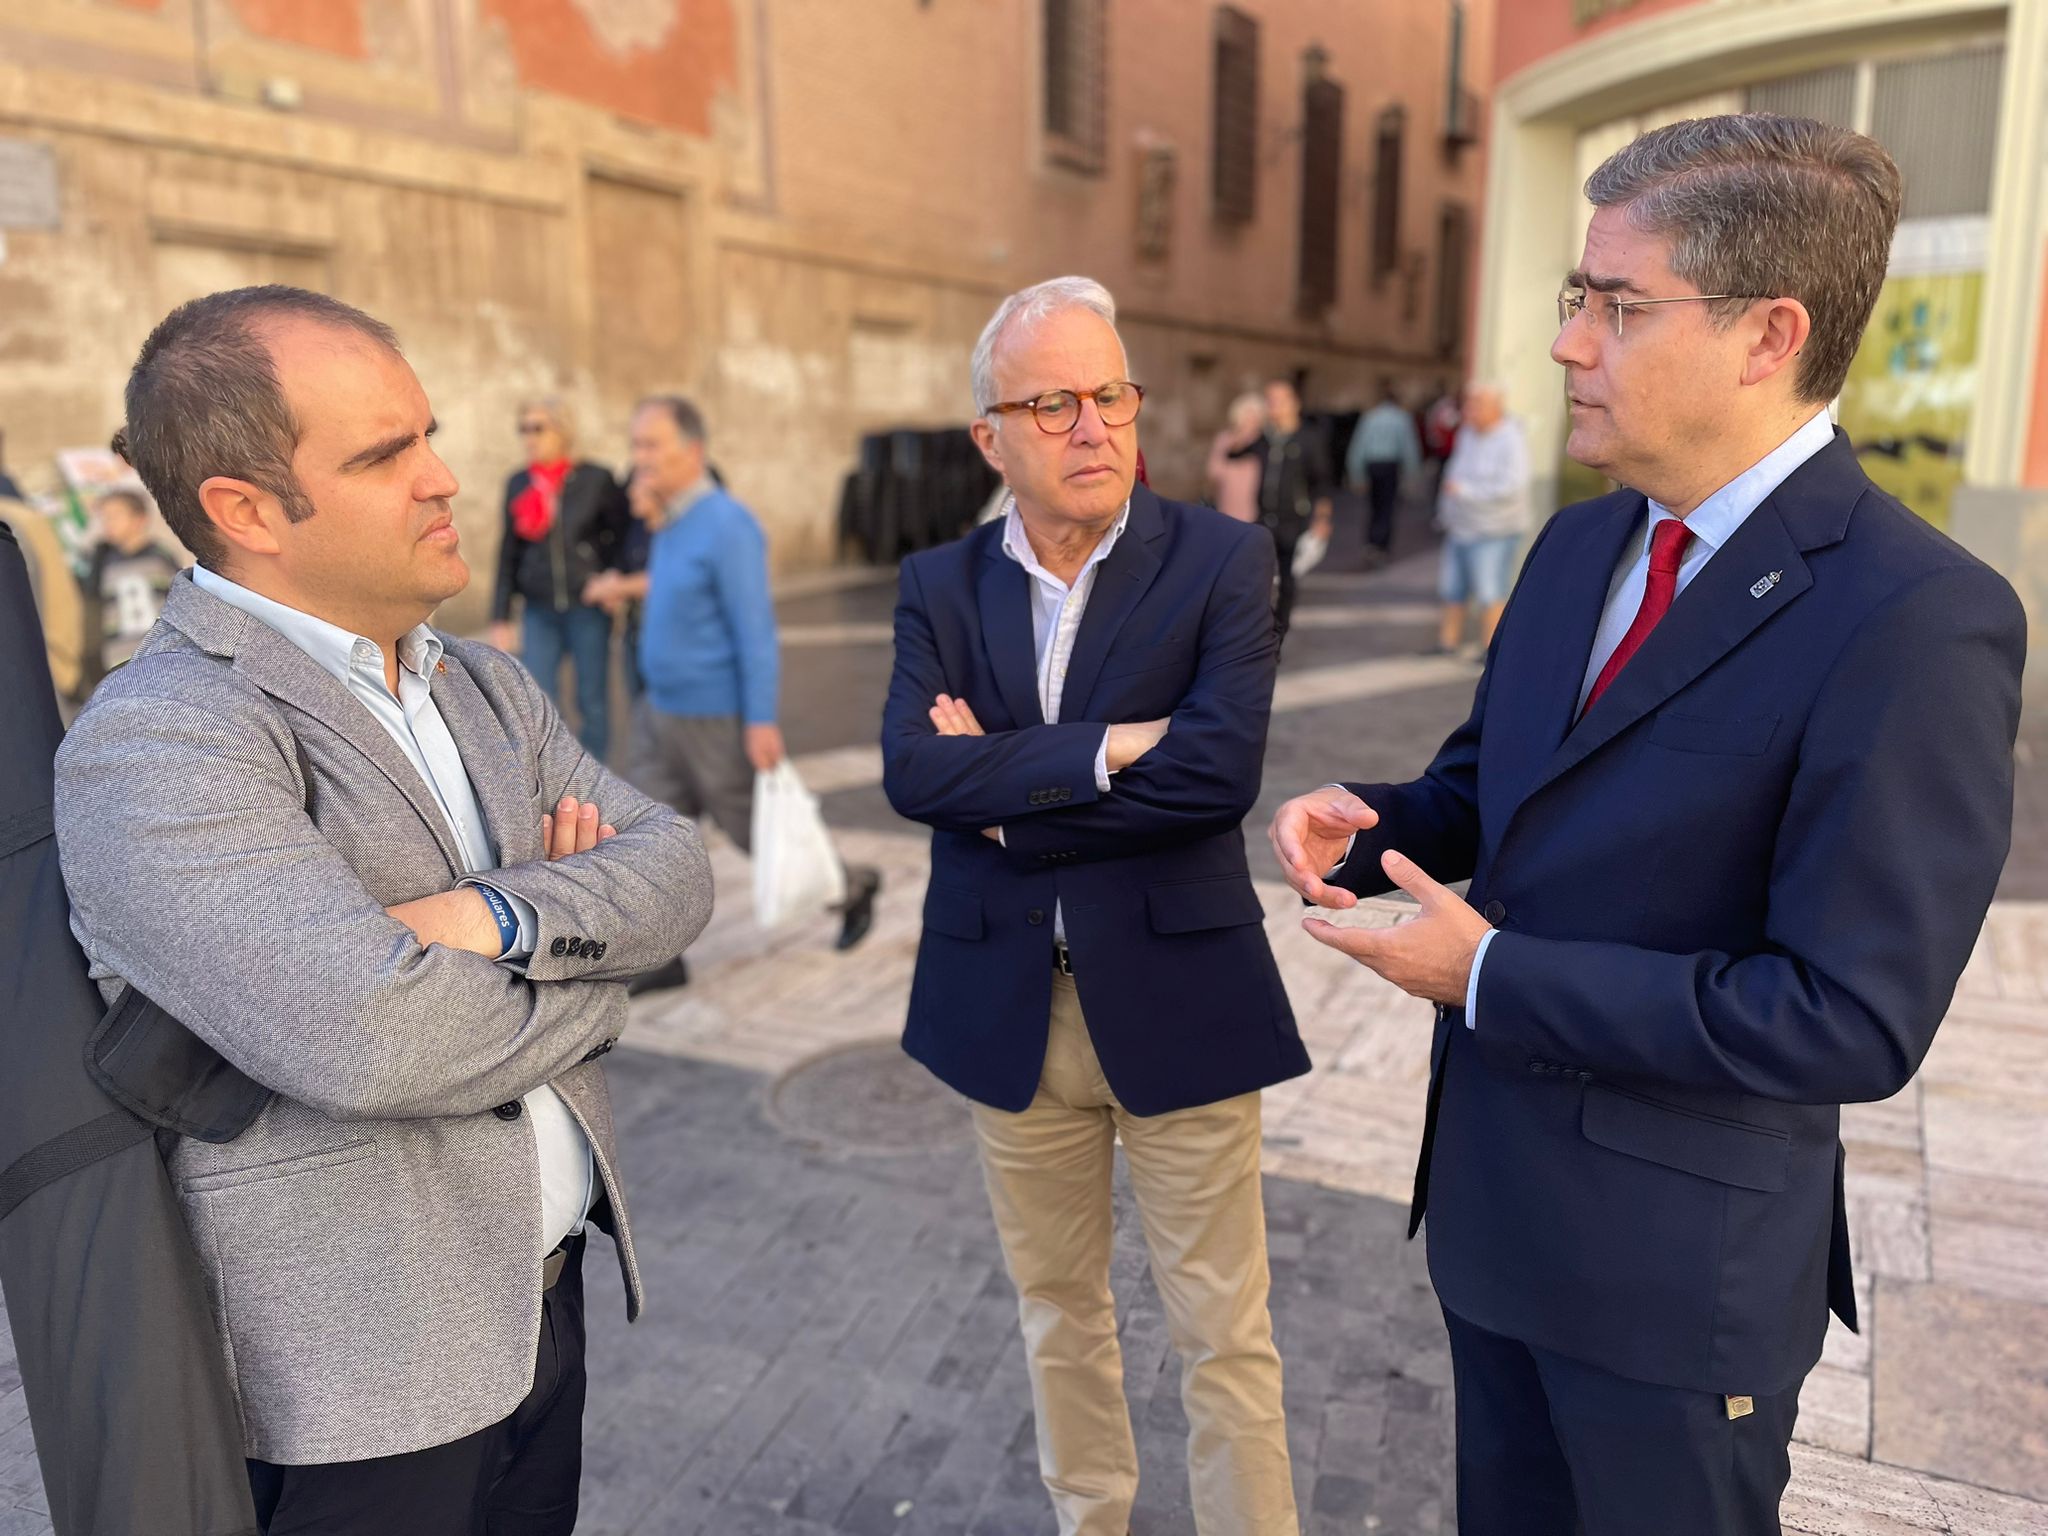 El PP propone incrementar la vigilancia en el casco urbano de Murcia para atajar la oleada de robos existente